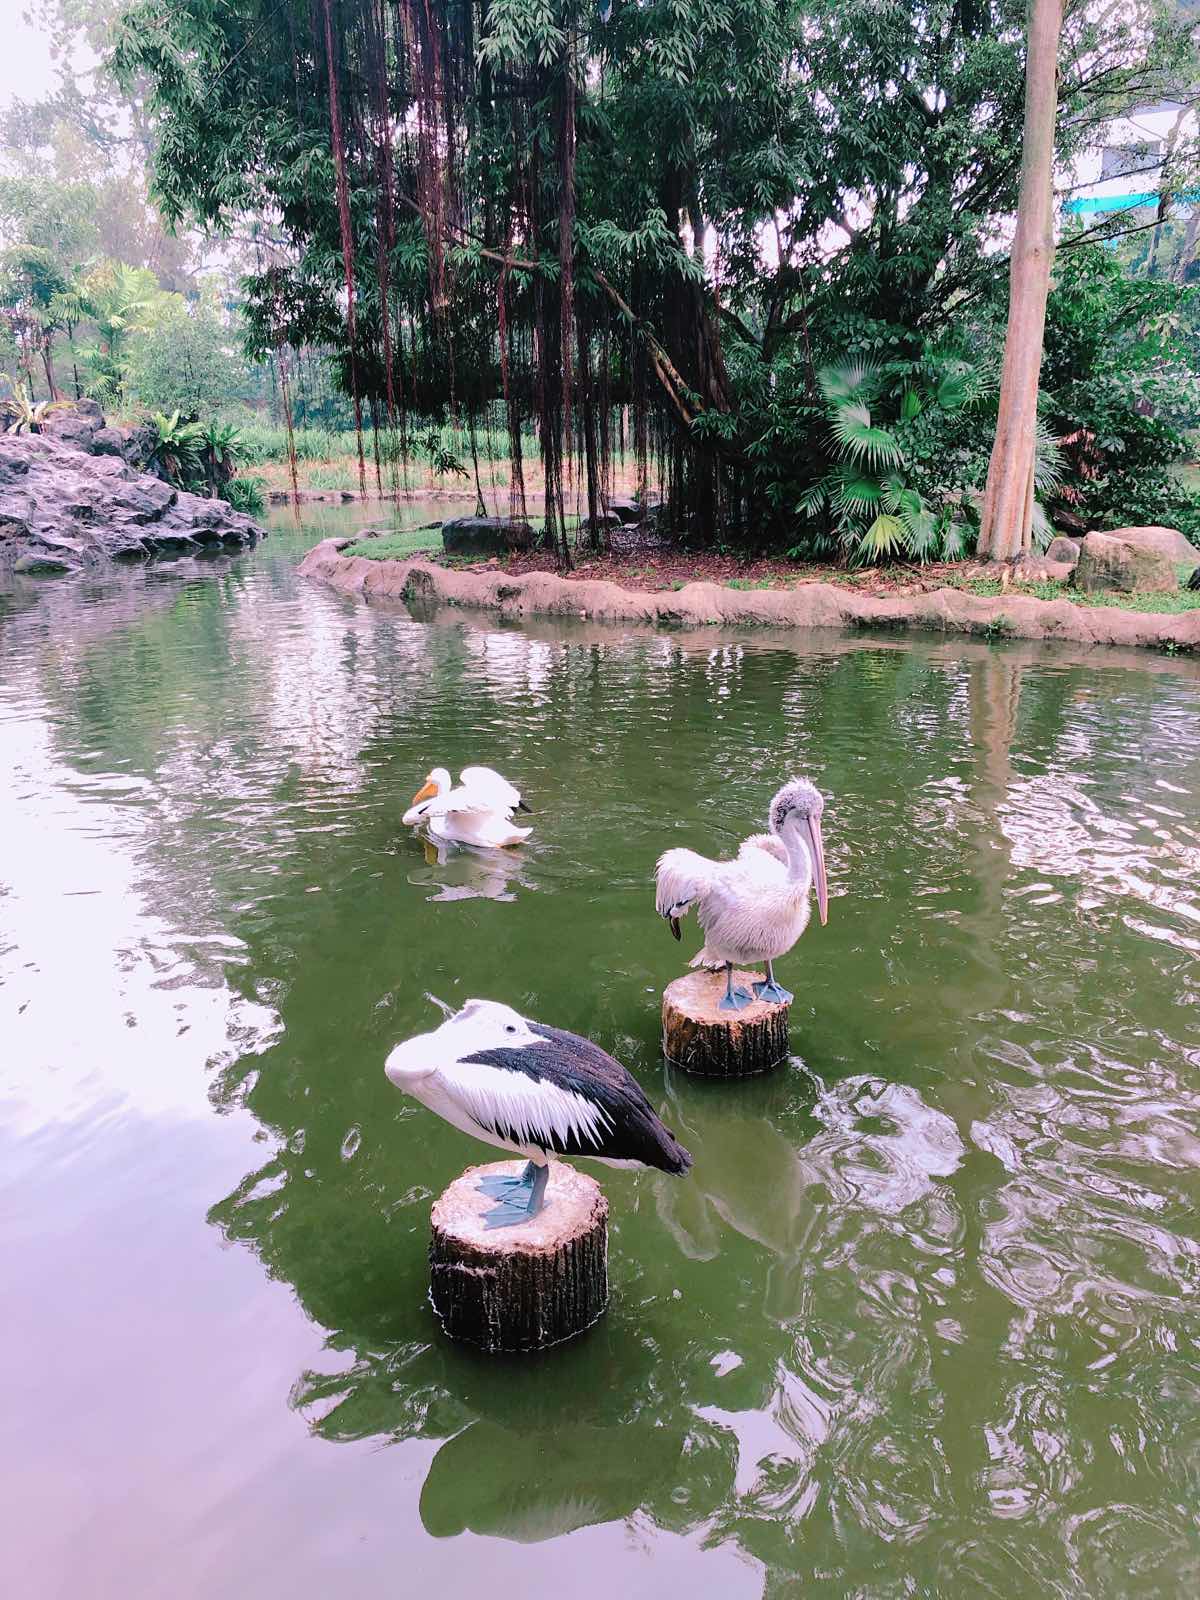 很值得去，虽然新加坡动物园也有一部分鸟类，但是还是很推荐飞禽公园，棉姐